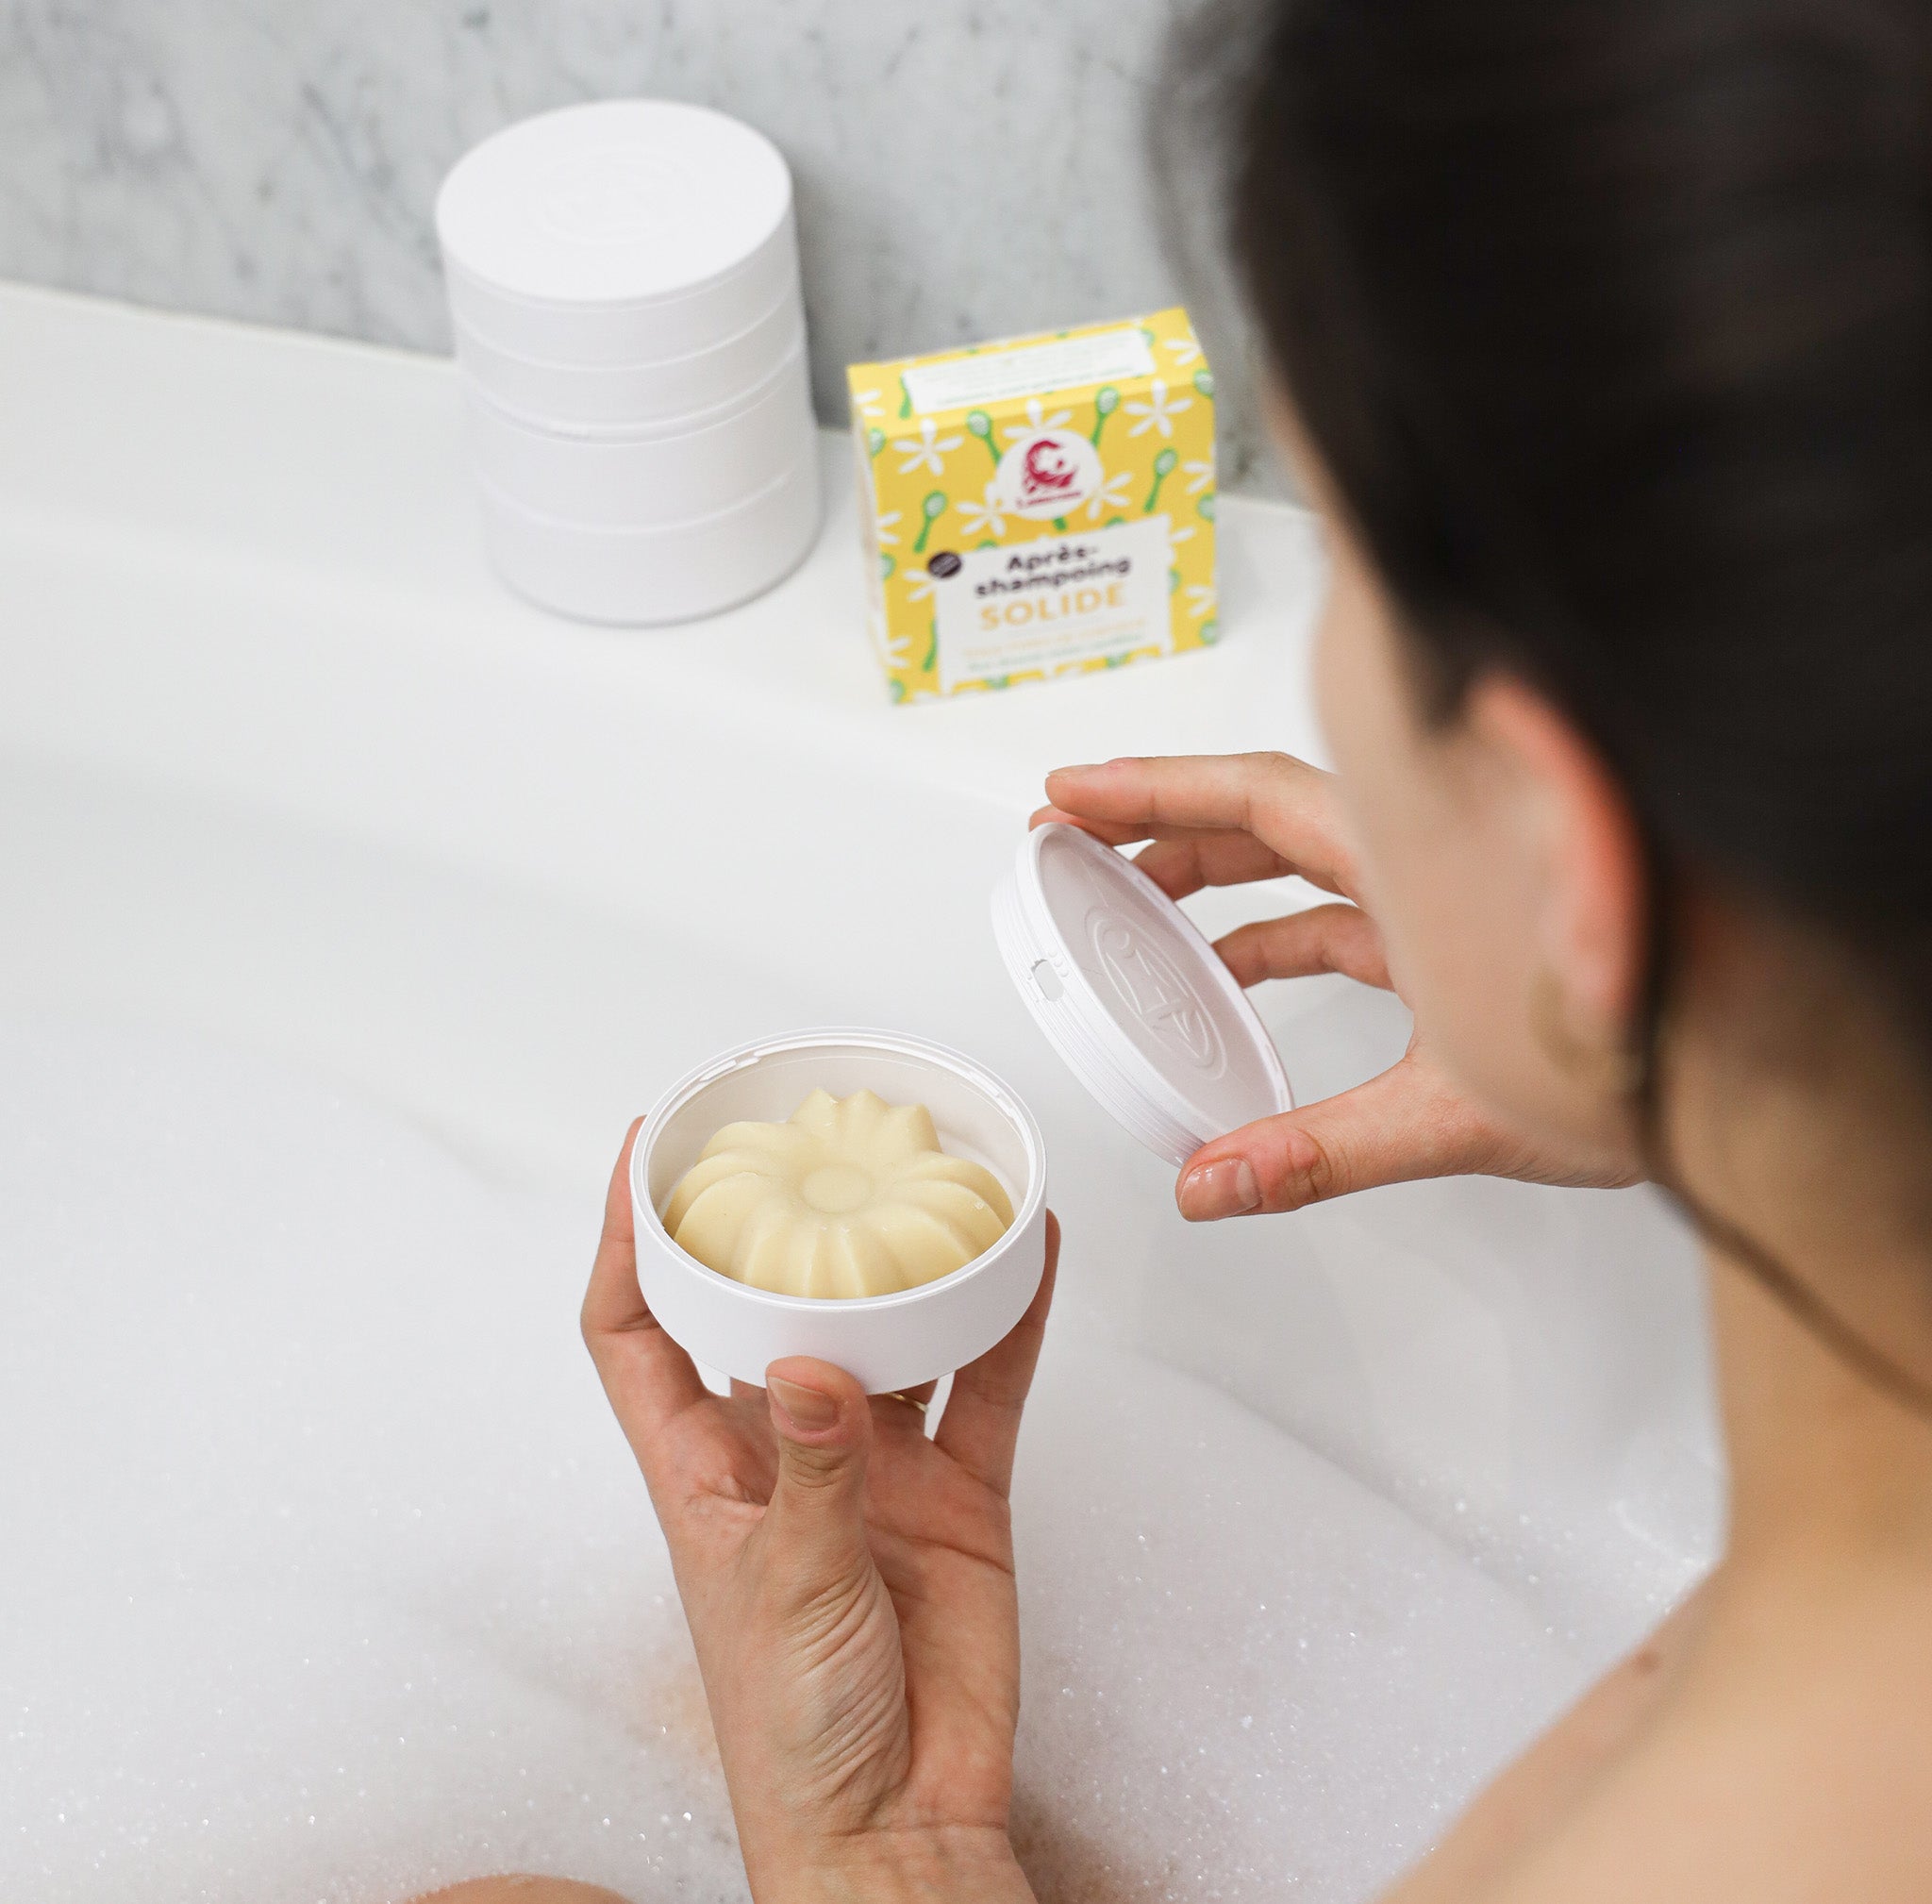 Après-shampoing de la marque Lamazuna, senteur vanille avec son packaging jaune dans les mains d'une personne dans un bain